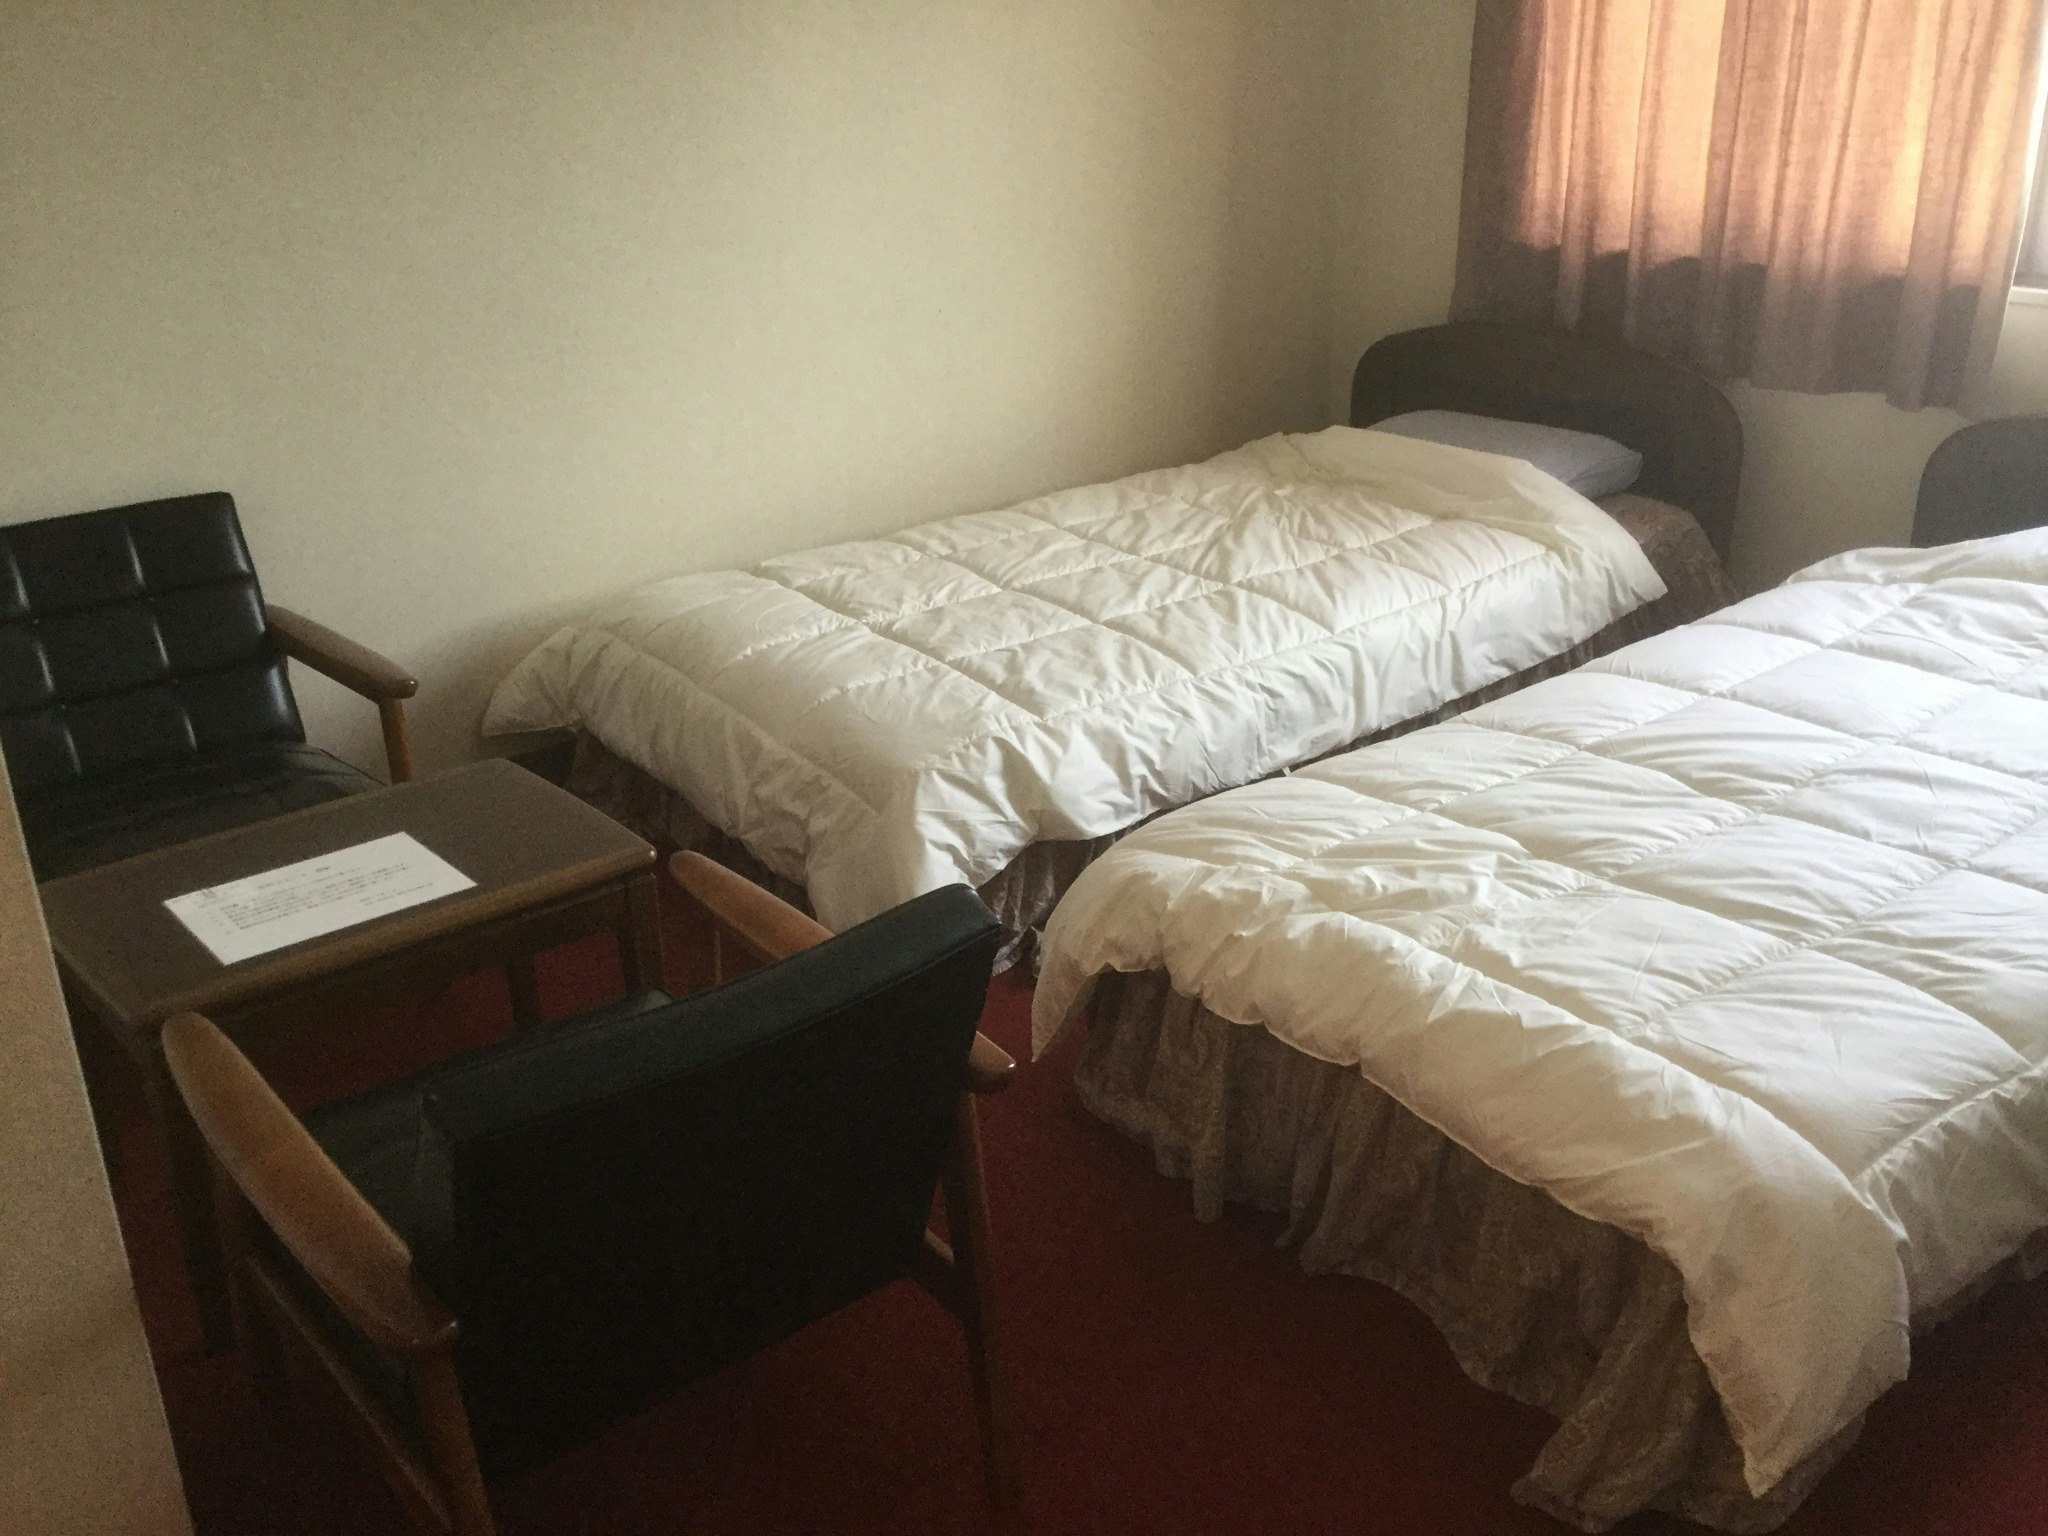 ホテル使用の民泊施設ドリーム 部屋タイプツイン 306号室